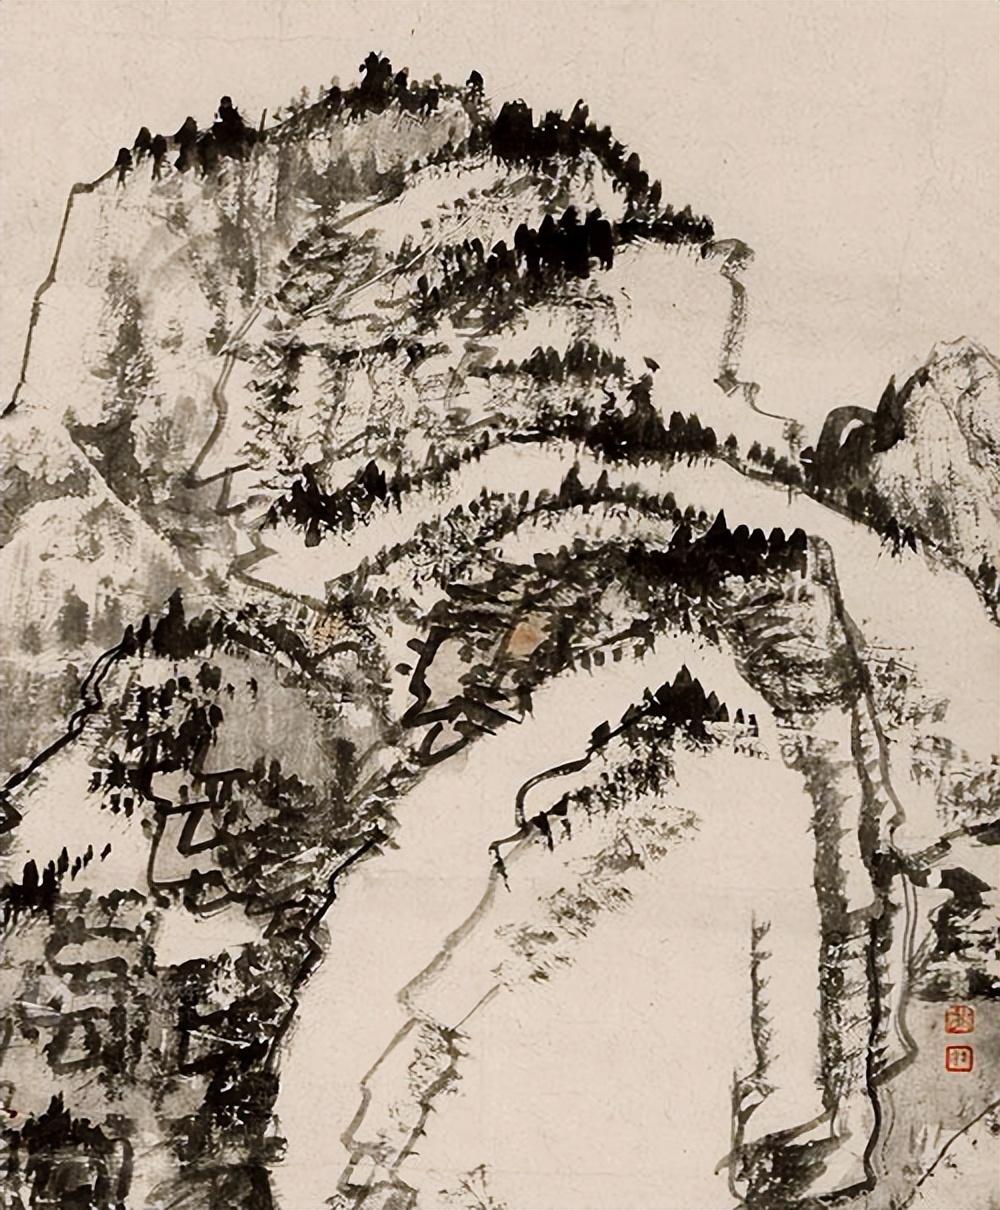 清代画家髡残山水画作品《雨后苍岩》高清图片欣赏